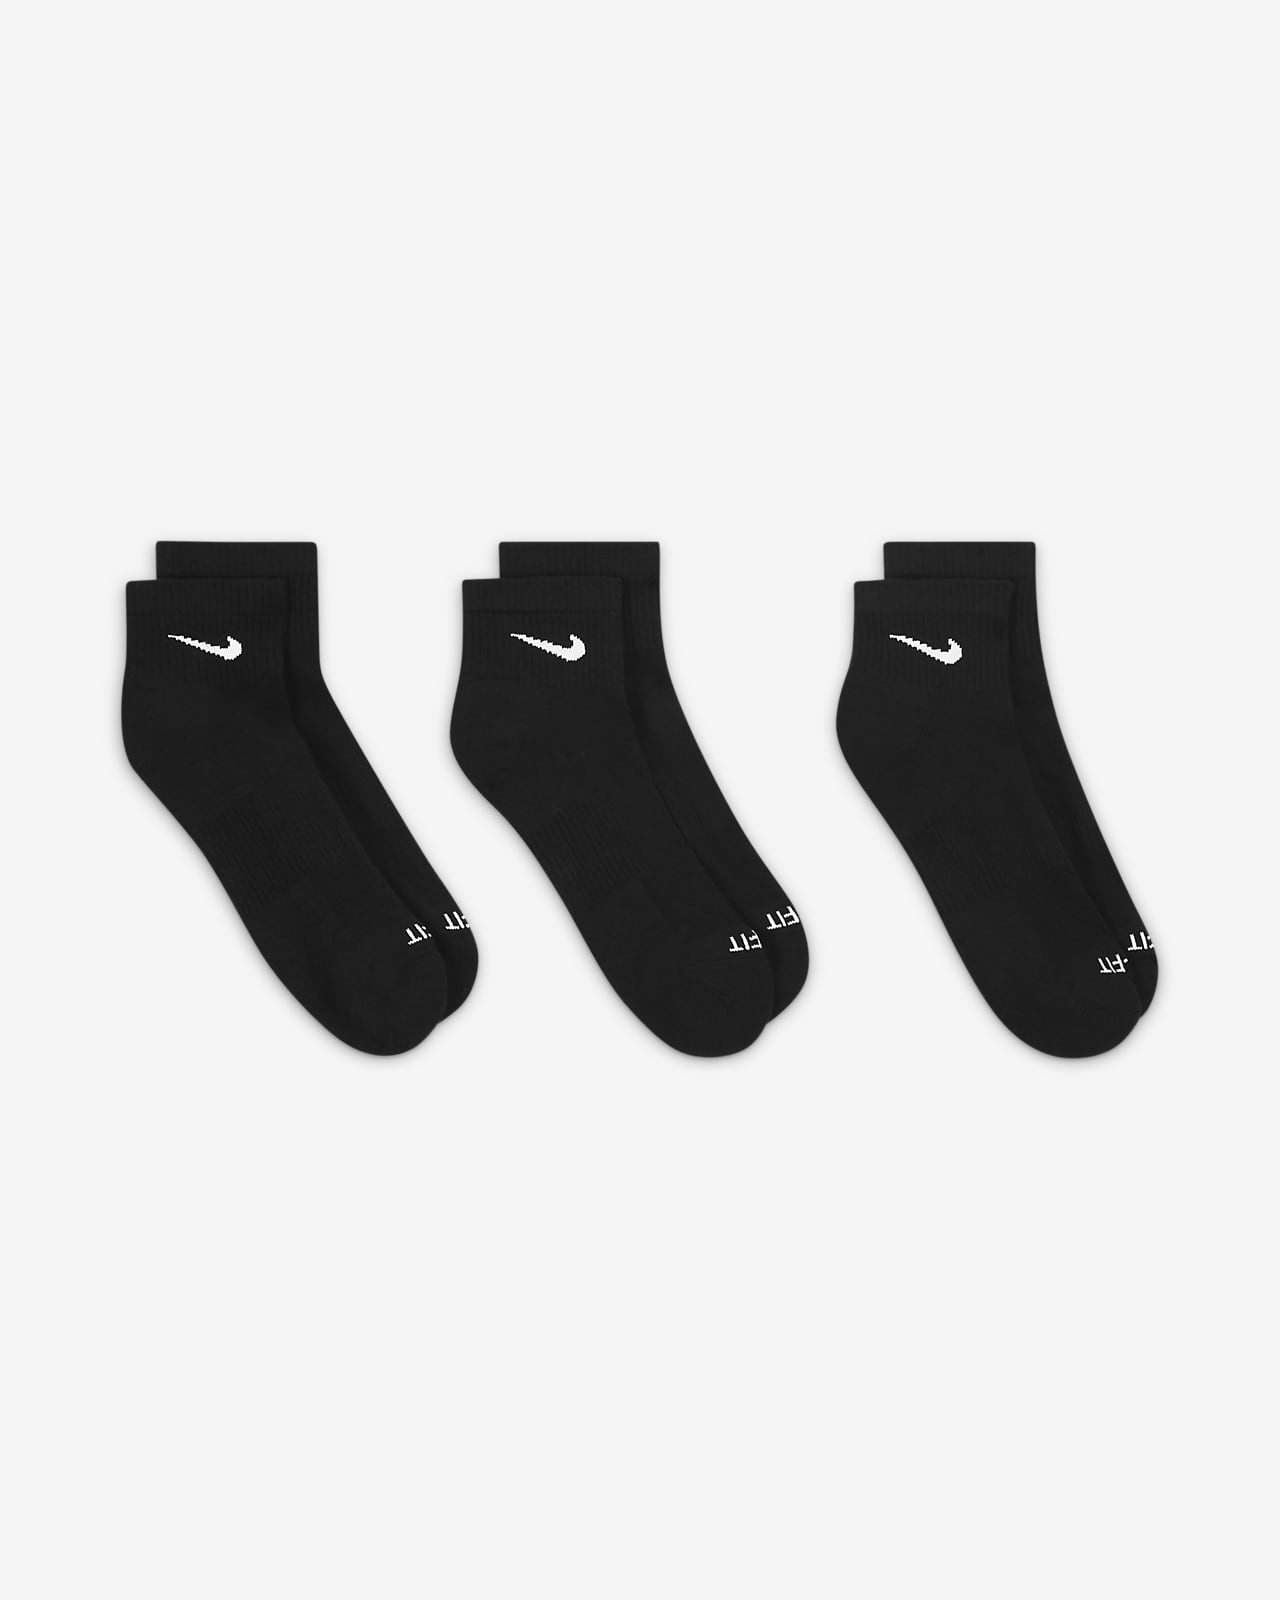 Chaussettes Nike Ankle Noir (2 paires)